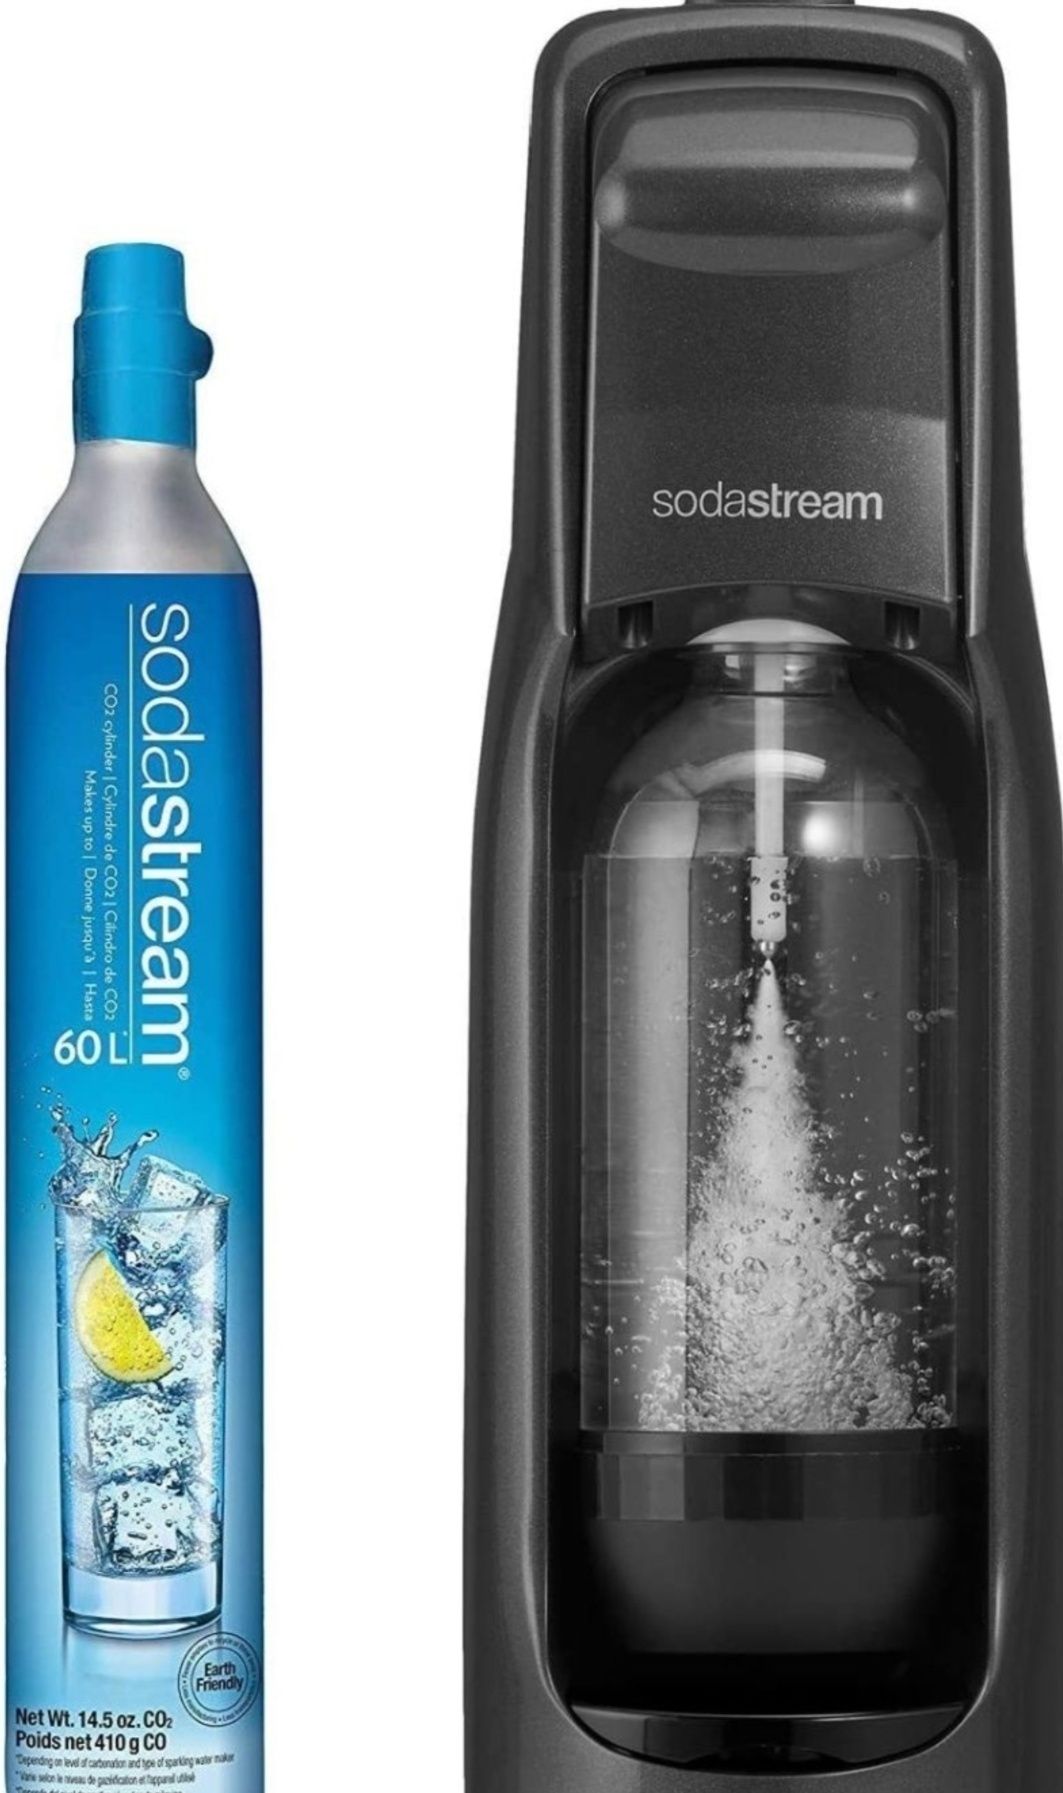 Soda stream napełnienie wymiana naboju butli CO2